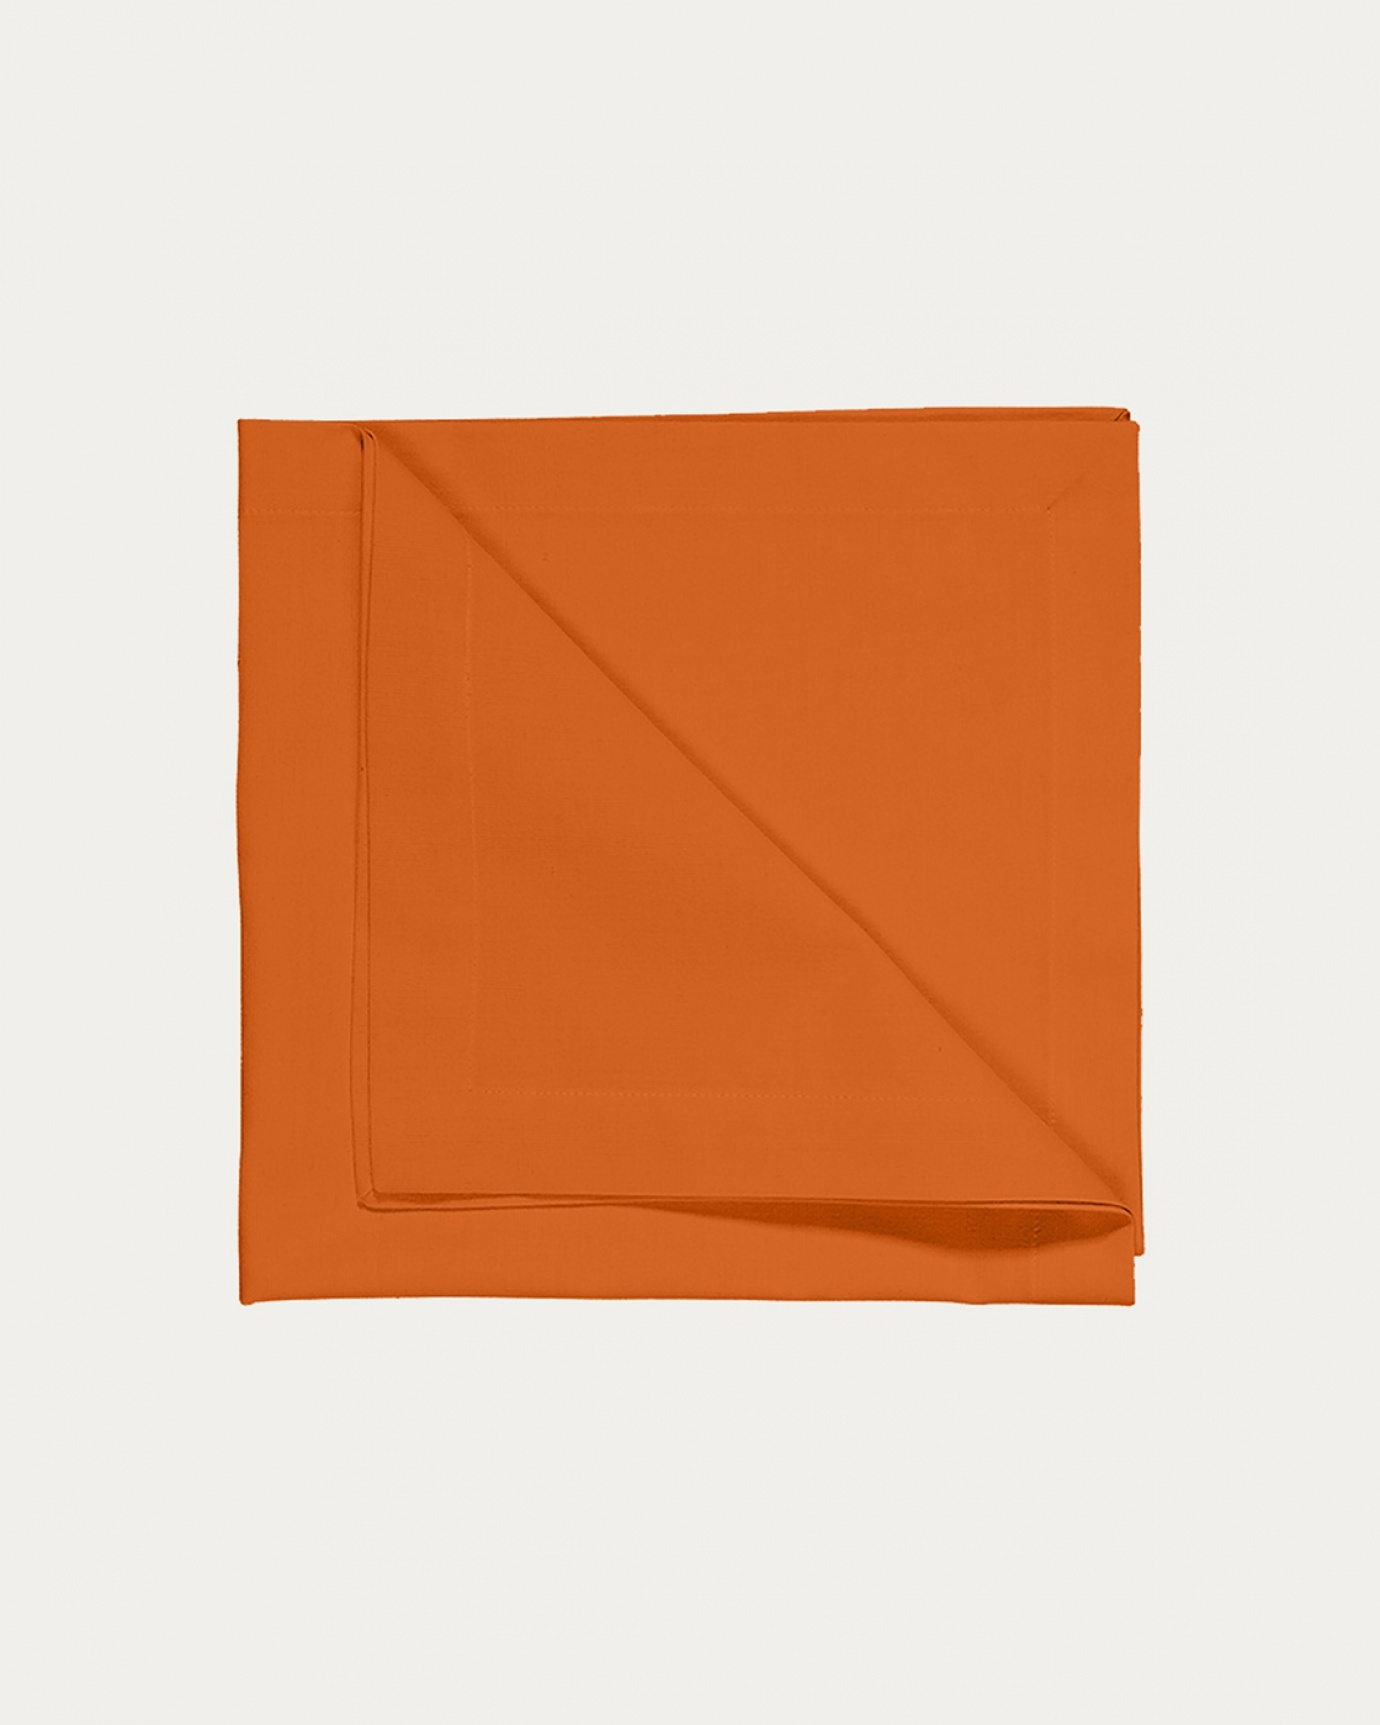 Image du produit serviette de table ROBERT orange en coton doux de LINUM DESIGN. Taille 45 x 45 cm et vendu en lot de 4.